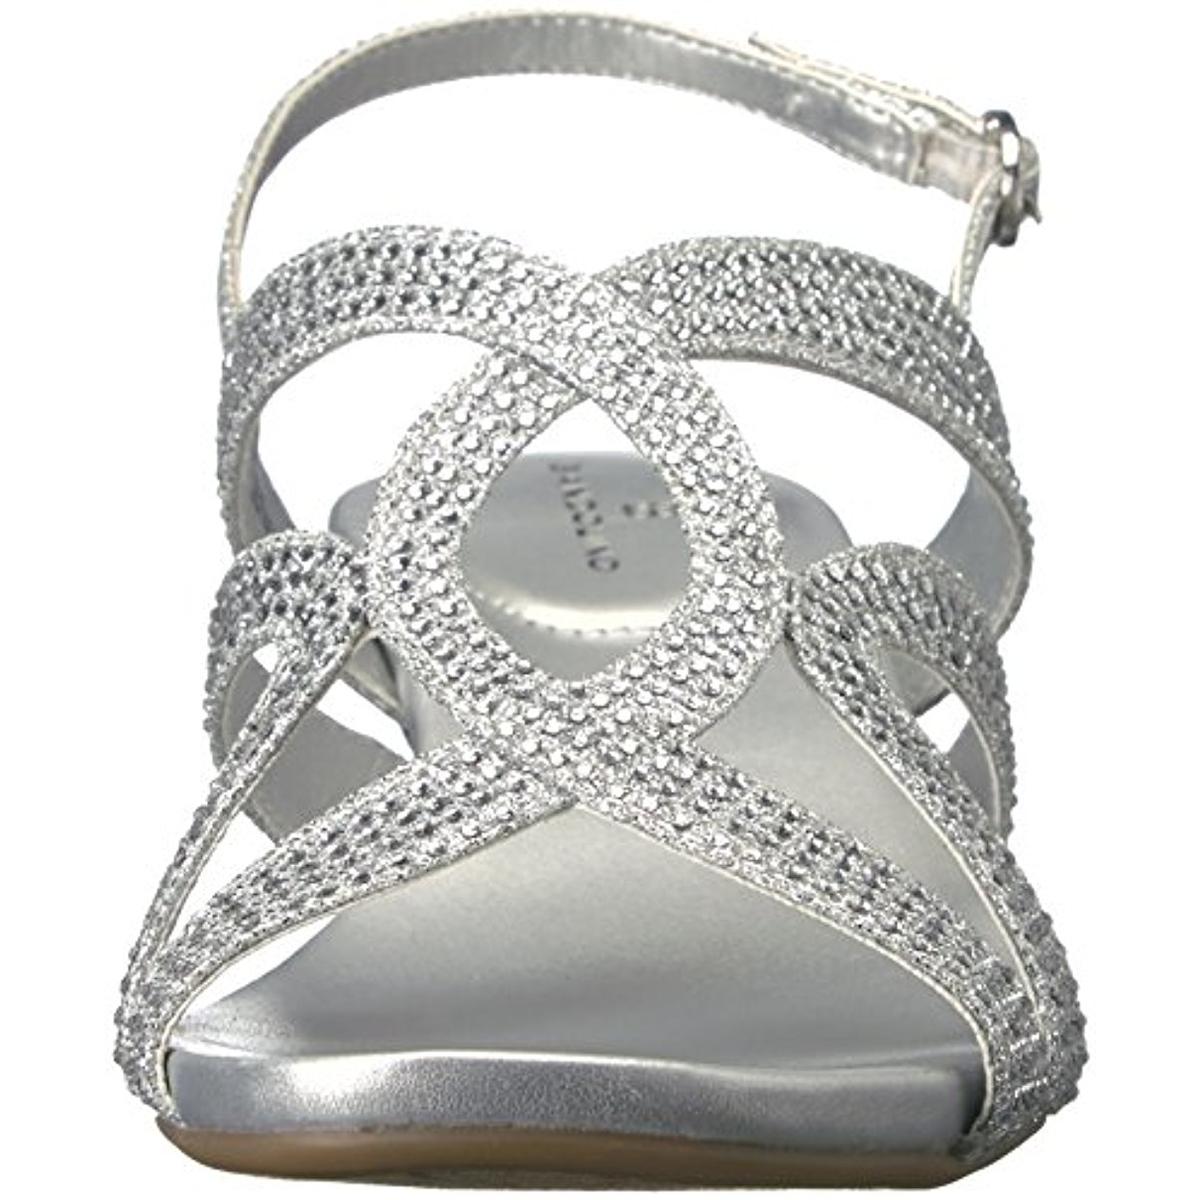 Bandolino Womens Gomeisa Silver Dress Sandals Shoes 8.5 Medium (B,M ...